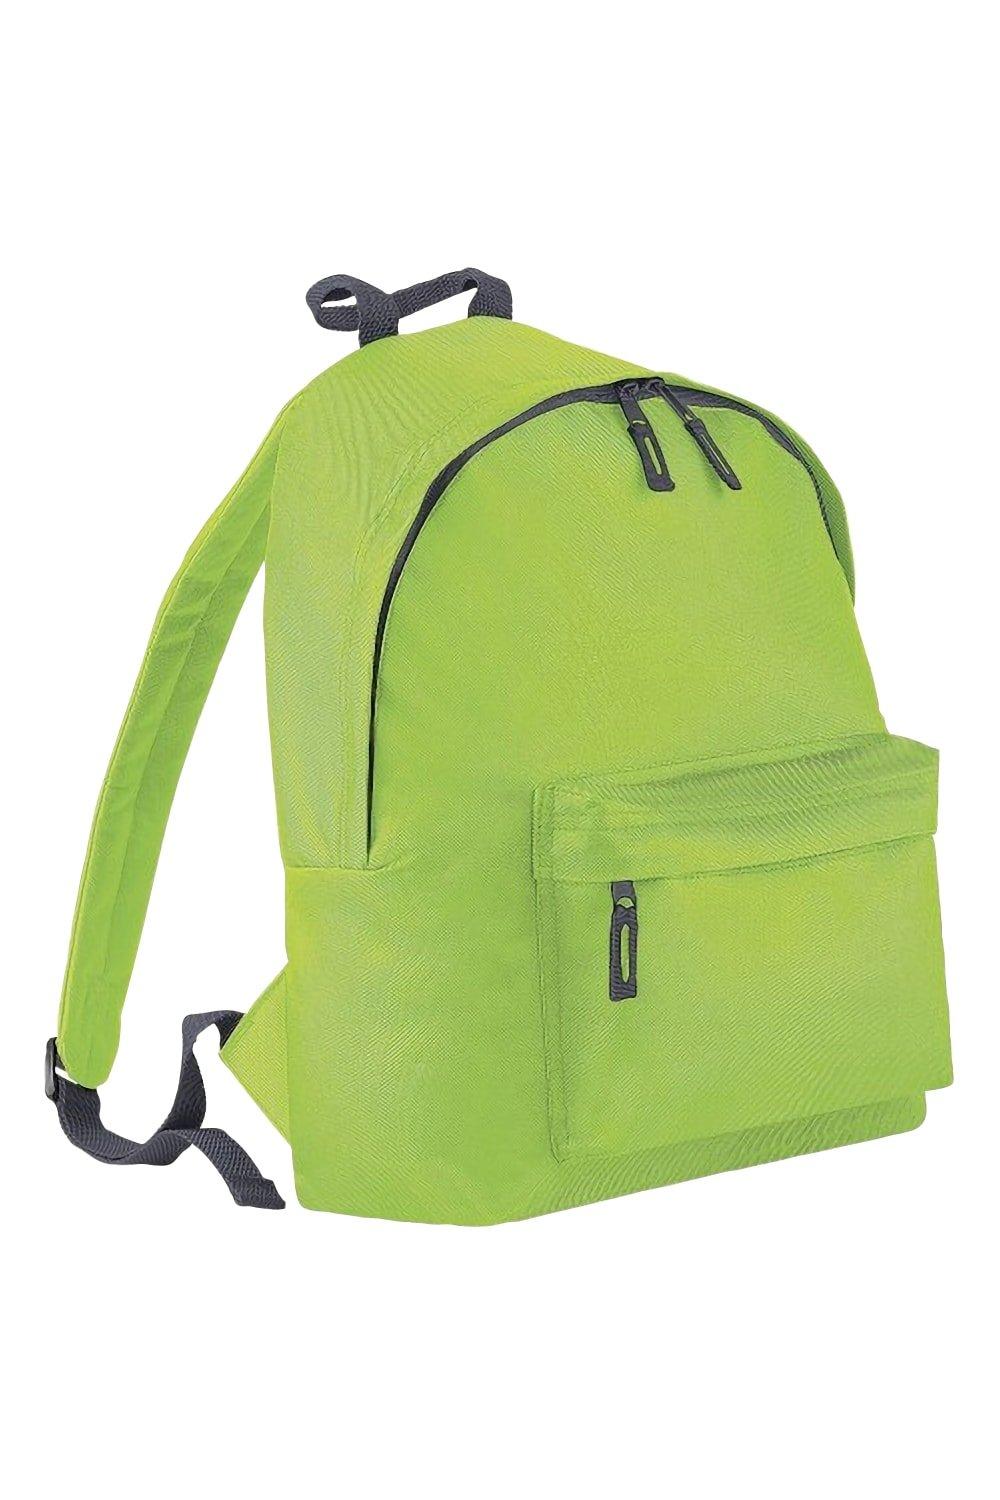 Модный рюкзак / рюкзак (14 литров) (2 шт. в упаковке) Bagbase, зеленый